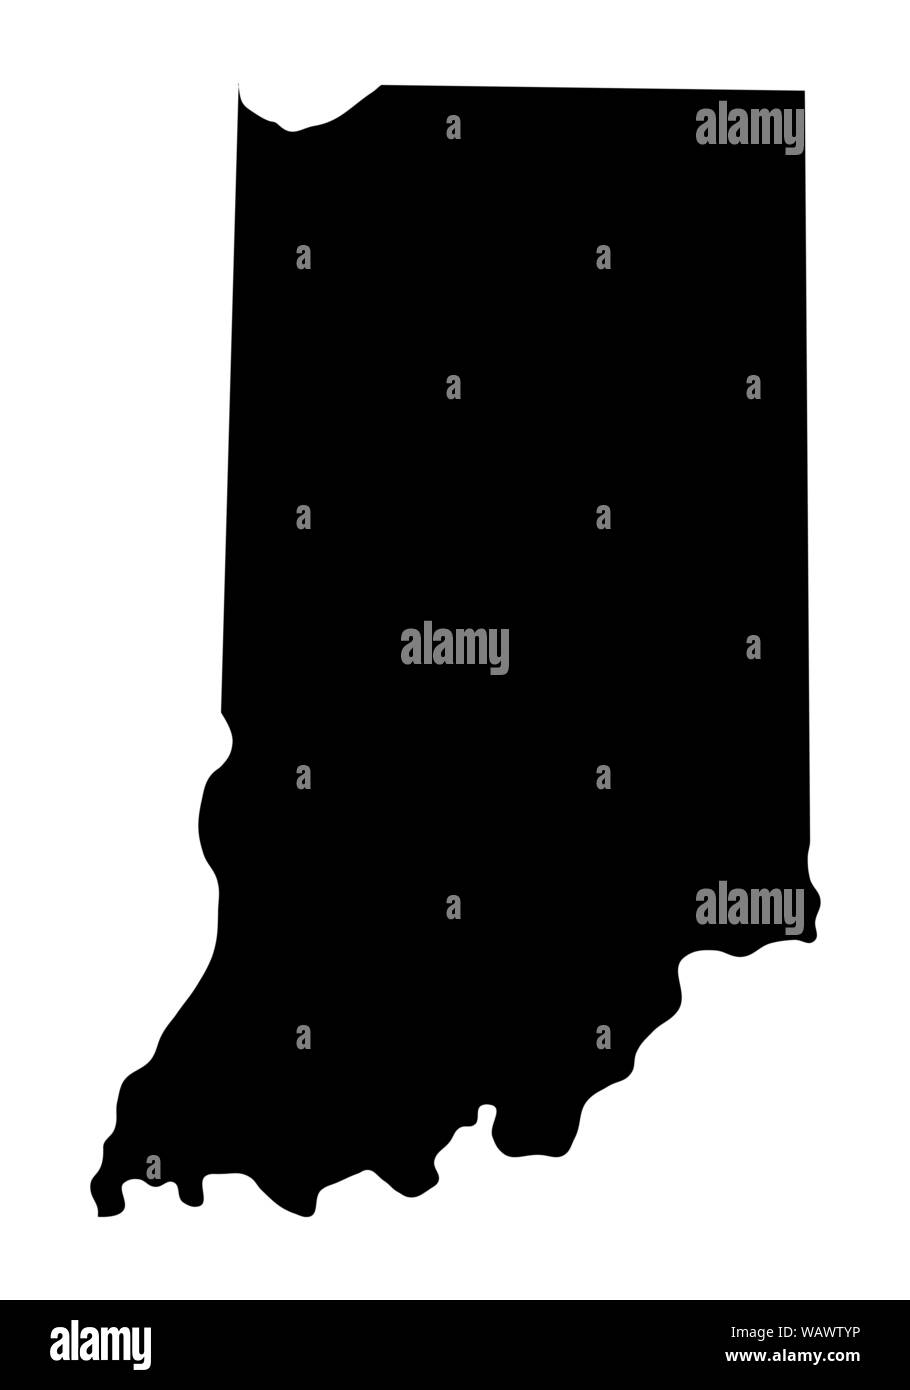 Indiana State dunkle Silhouette Karte auf weißem Hintergrund Stock Vektor